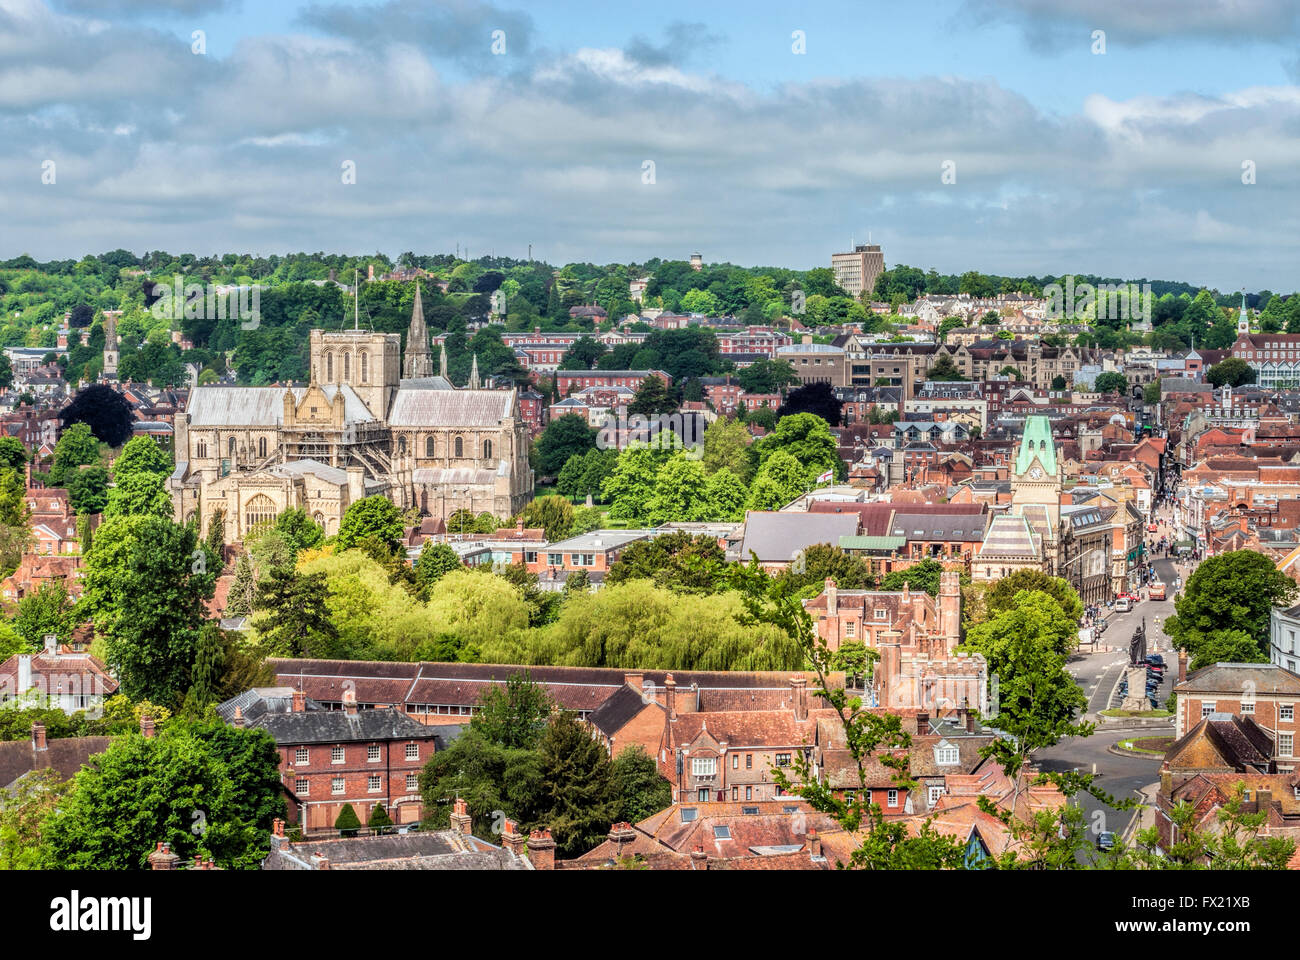 Vistas sobre el casco histórico de la ciudad de Winchester, Hampshire, Inglaterra. Foto de stock